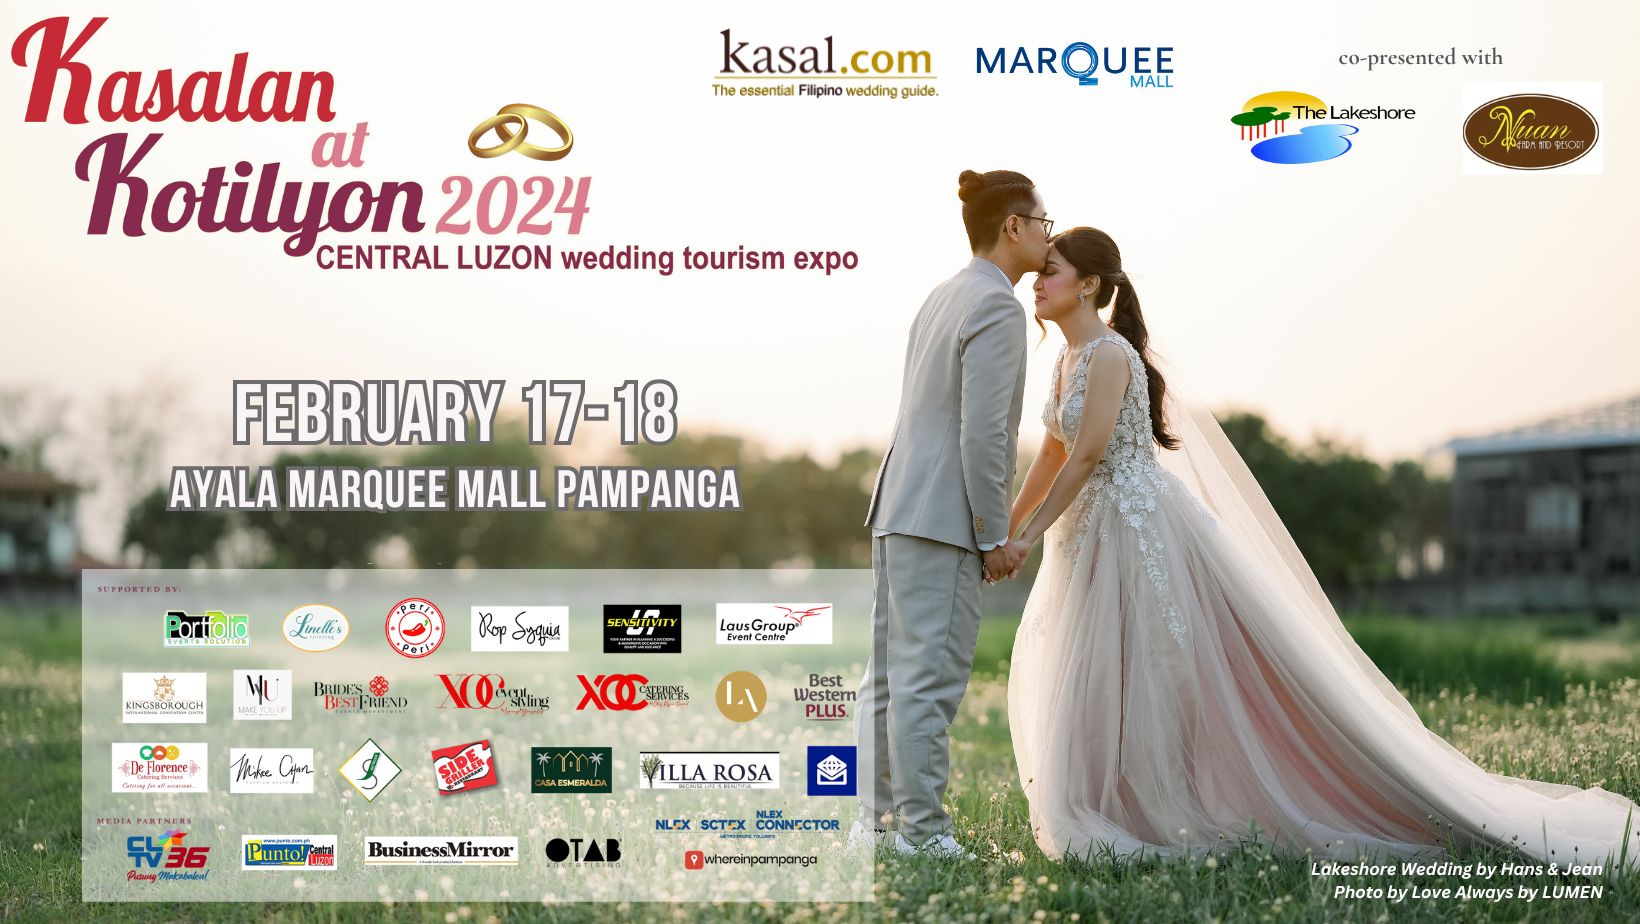 KK2024 Central Luzon Wedding Tourism Expo